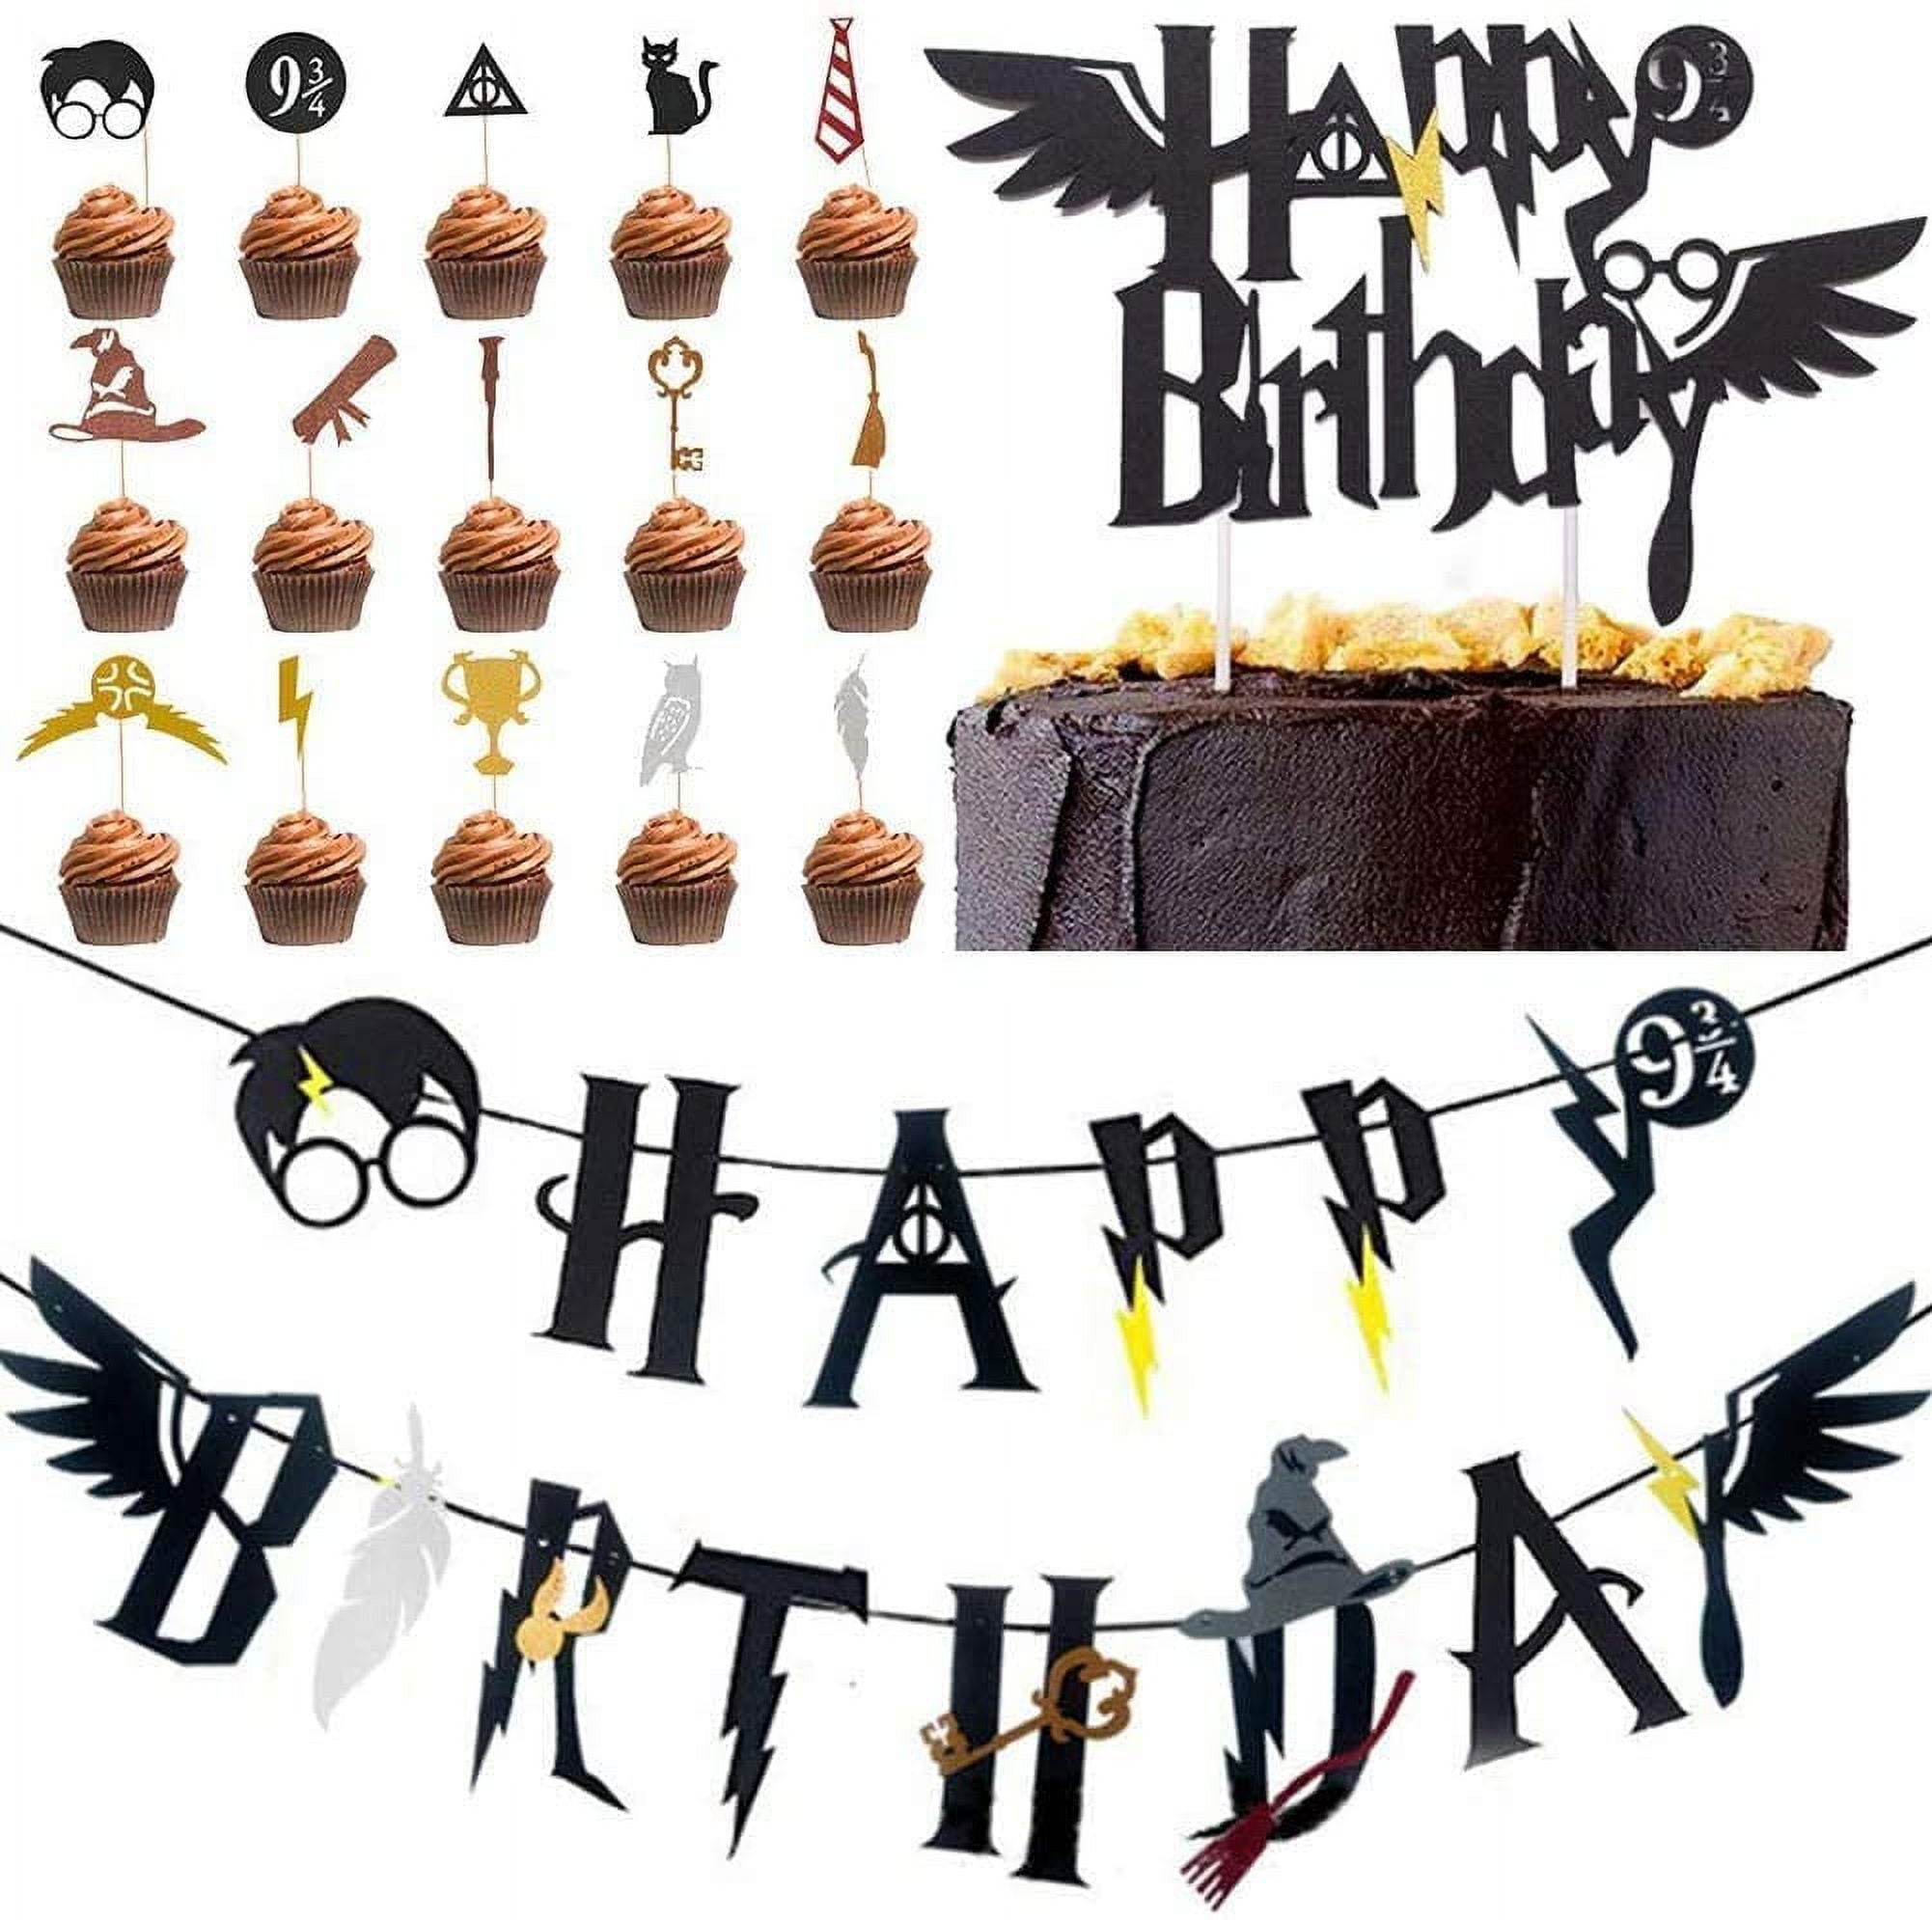 Printable Wizard Birthday Party Decorations Wizard Happy -   Harry  potter bricolage, Bannières de joyeux anniversaire, Style de harry potter